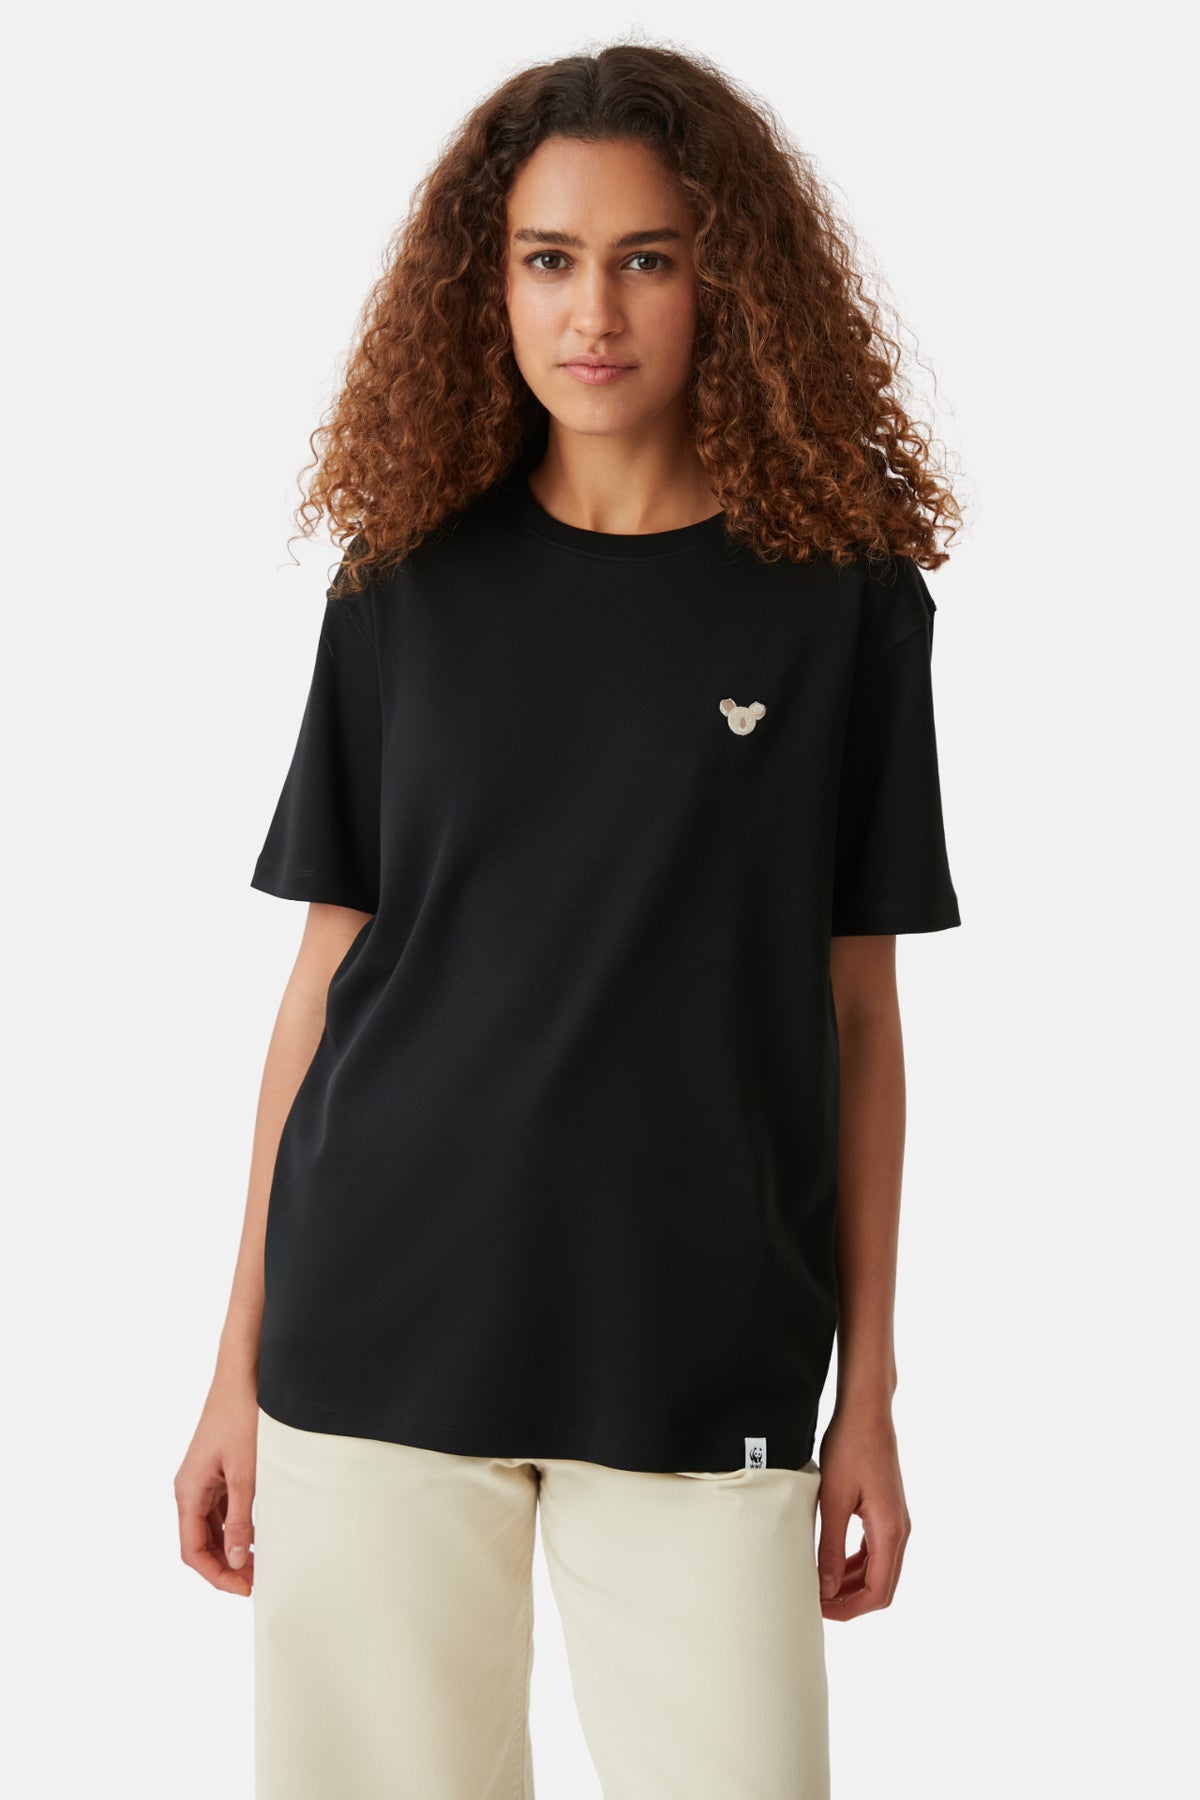 Koala Premium T-shirt - Siyah